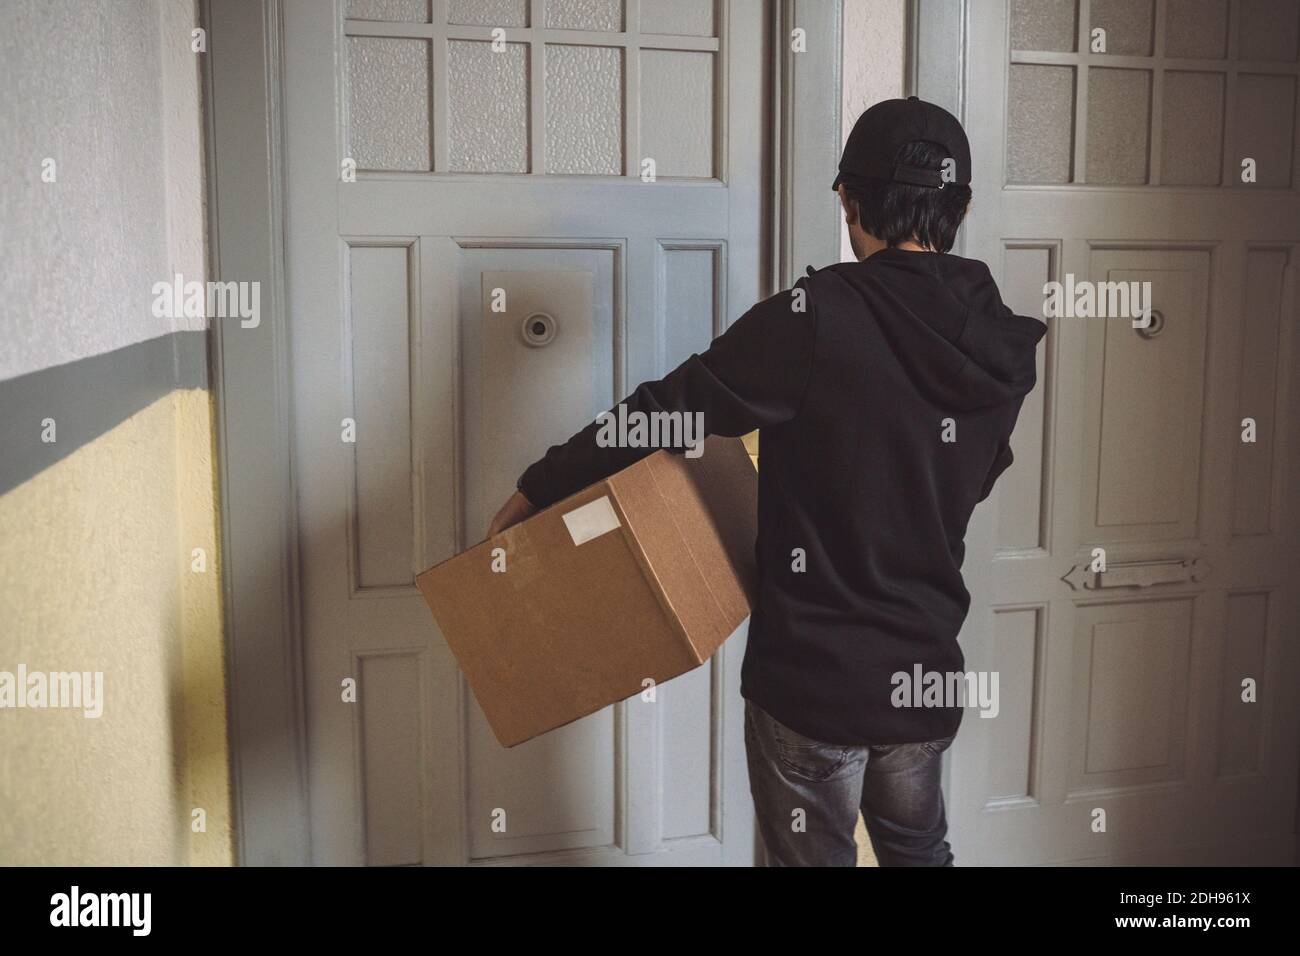 Vista trasera del hombre de la entrega con el paquete parado en la puerta Foto de stock